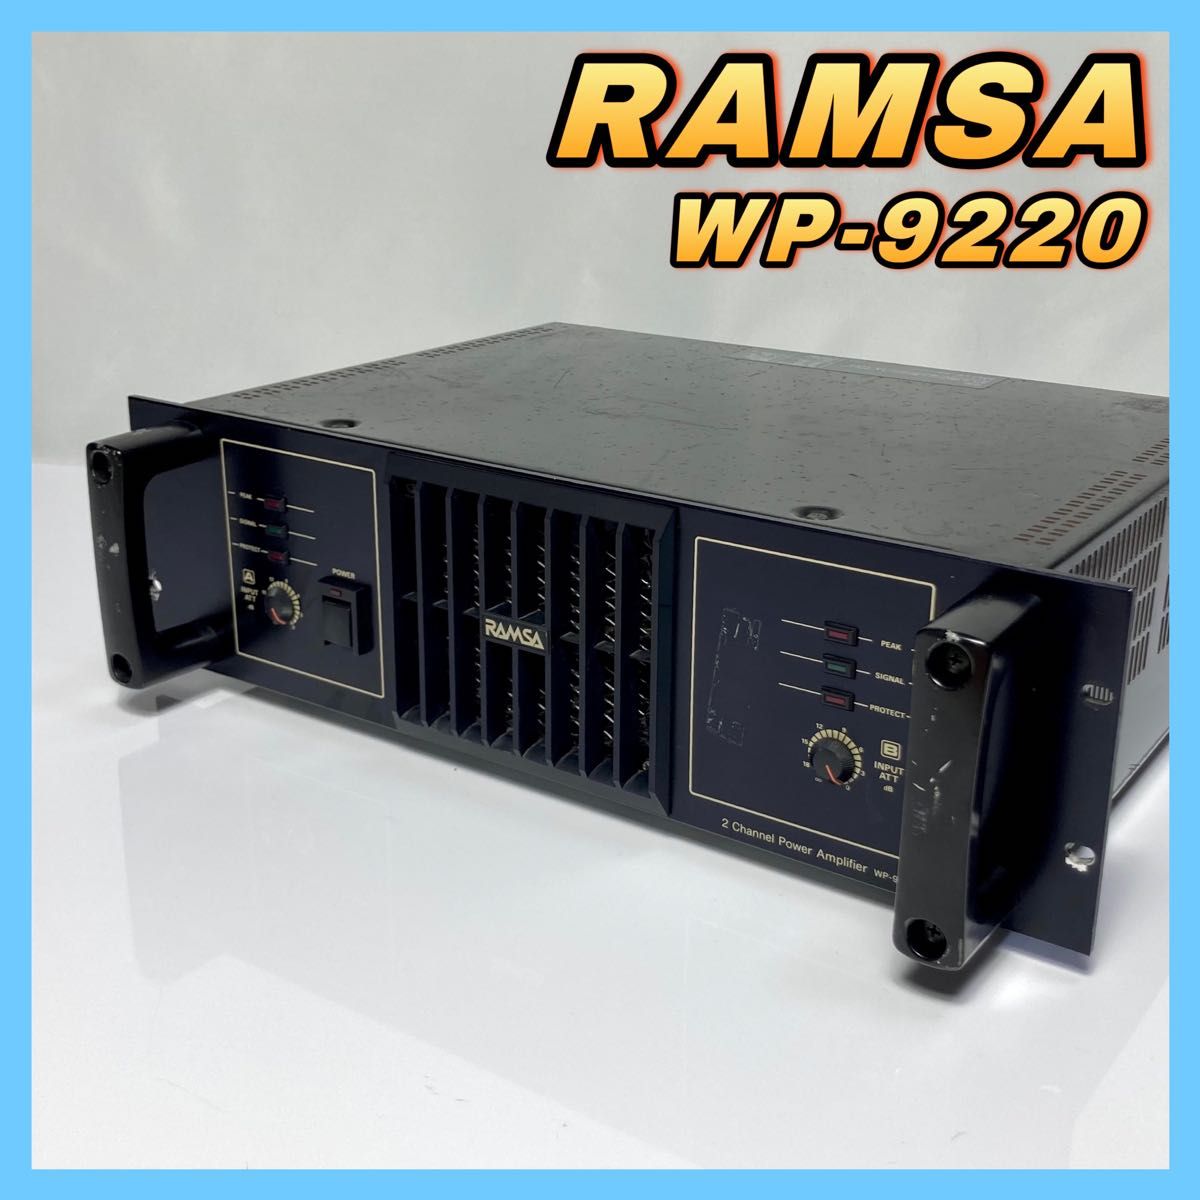 ★返品保証★ RAMSA パワーアンプ WP-9220 2ch 600W Panasonic ラムサ